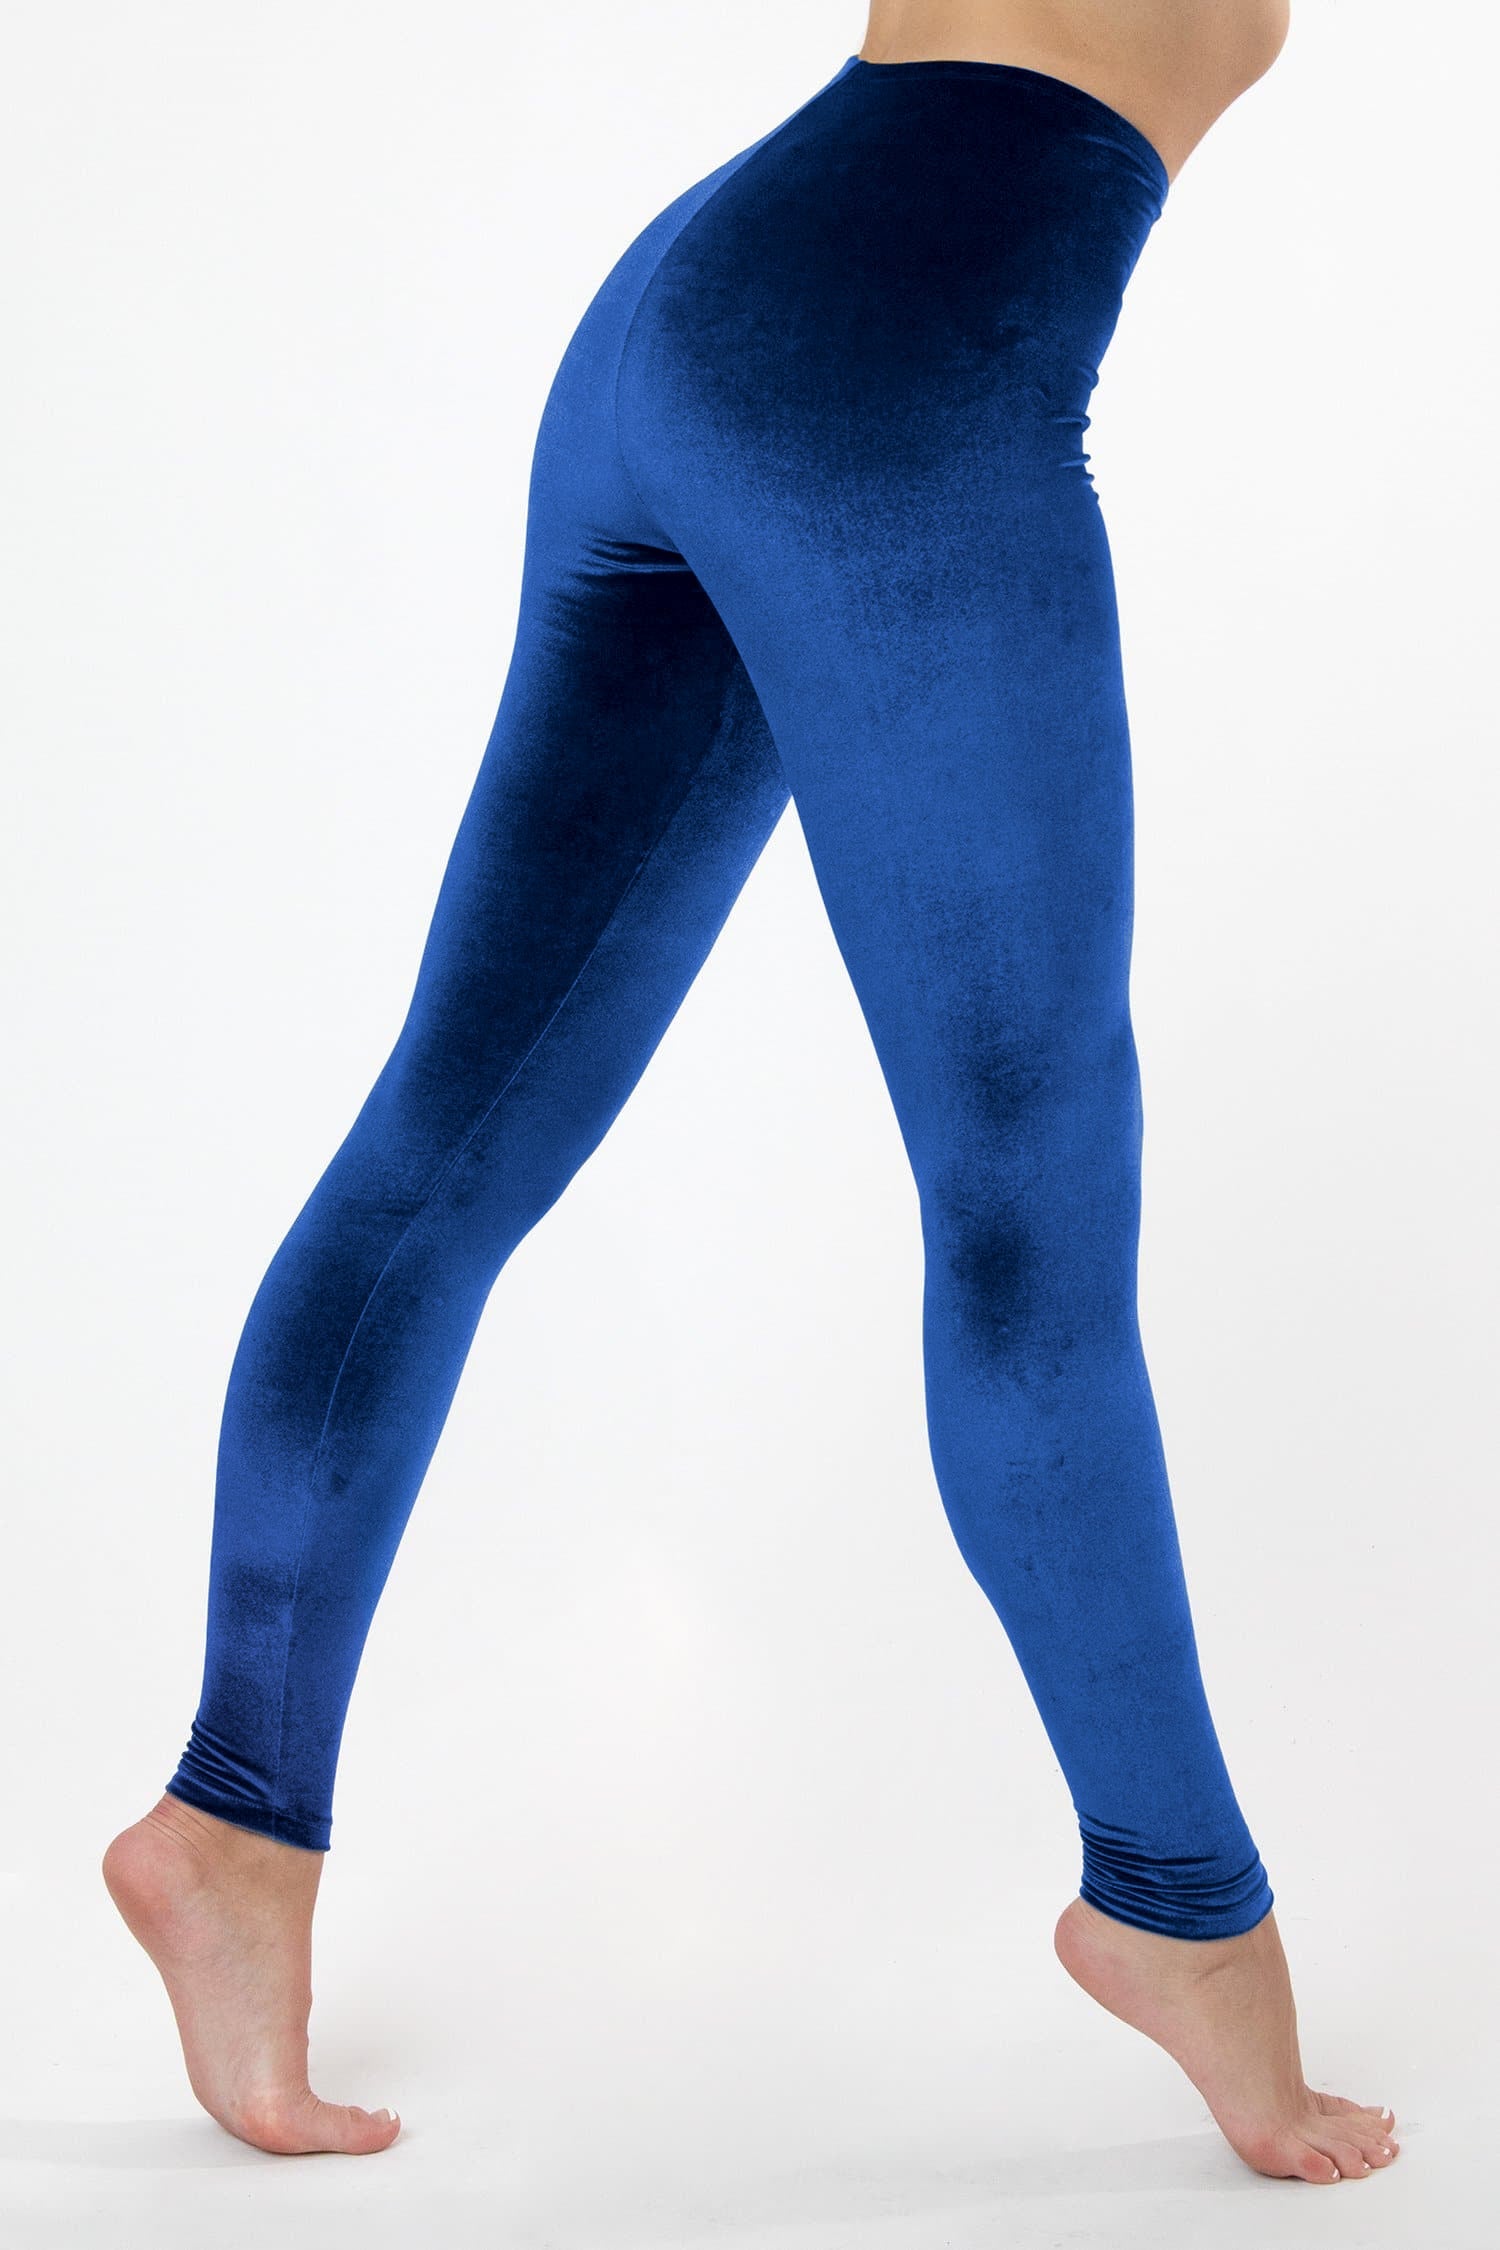 Women's Blue Leggings, Blue Velvet, Yoga & Denim Leggings